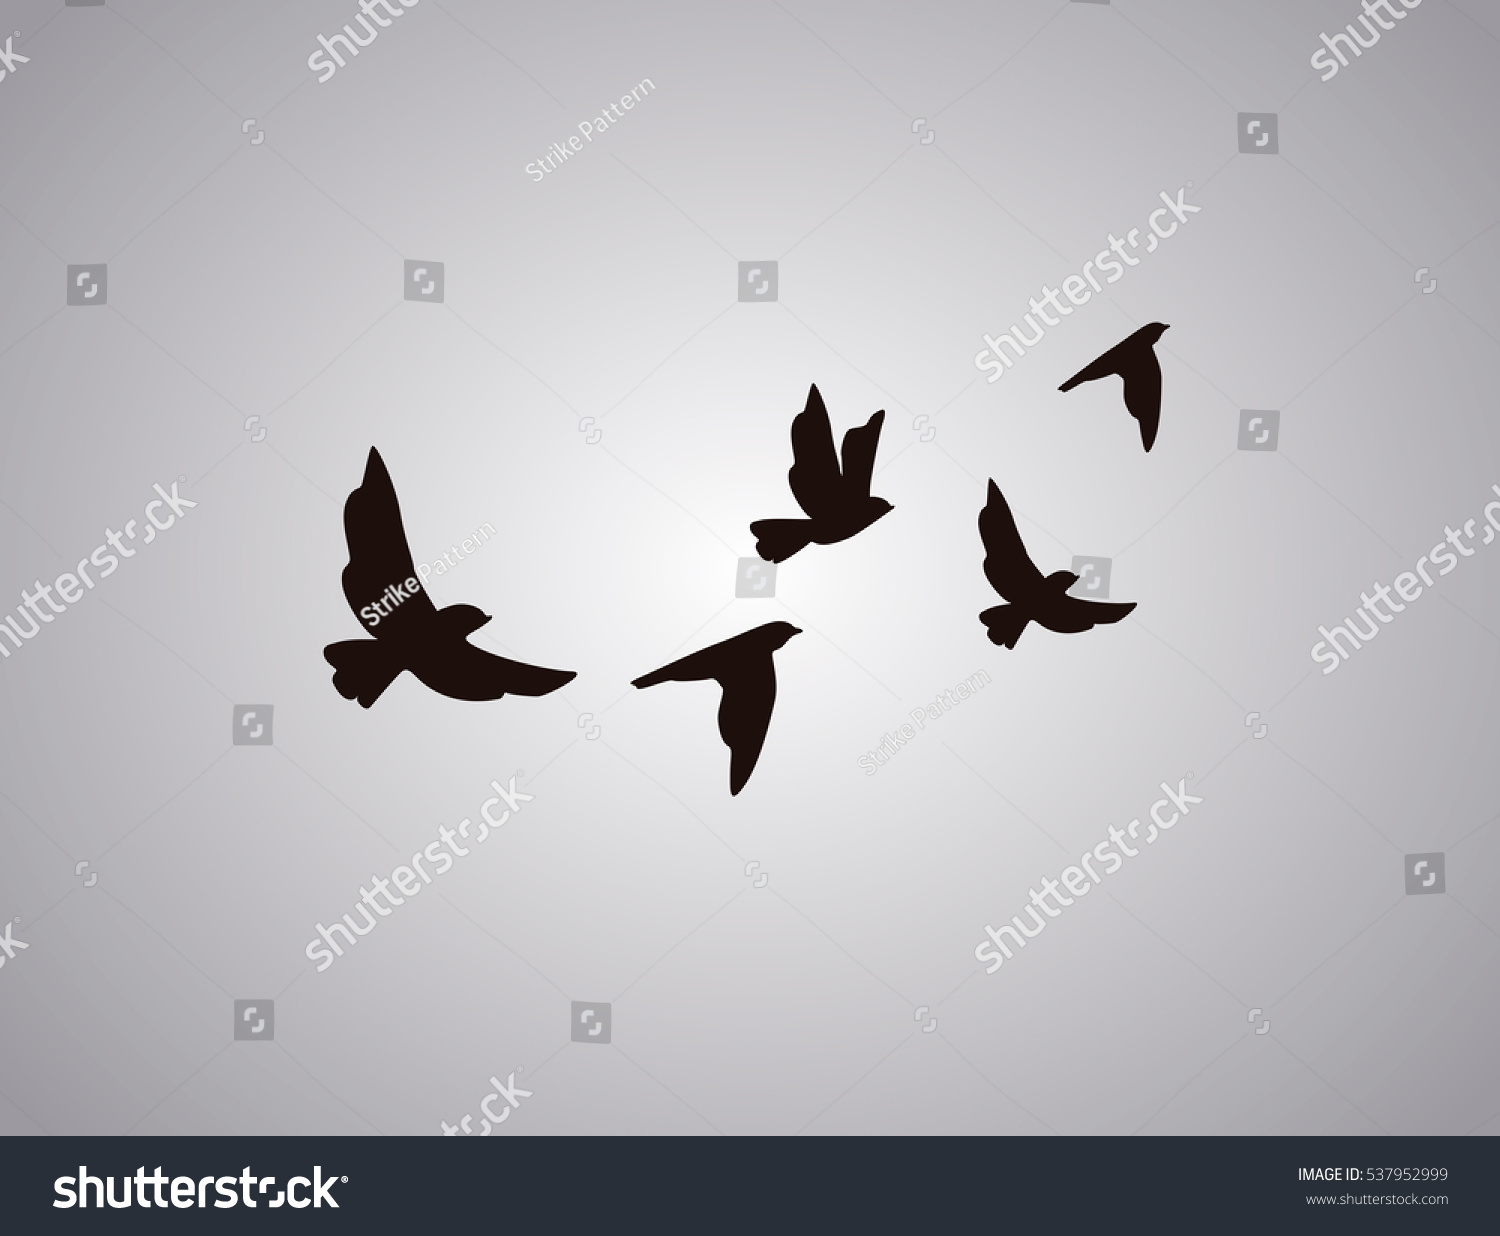 10 192件の 小鳥 シルエット イラスト のイラスト素材 画像 ベクター画像 Shutterstock